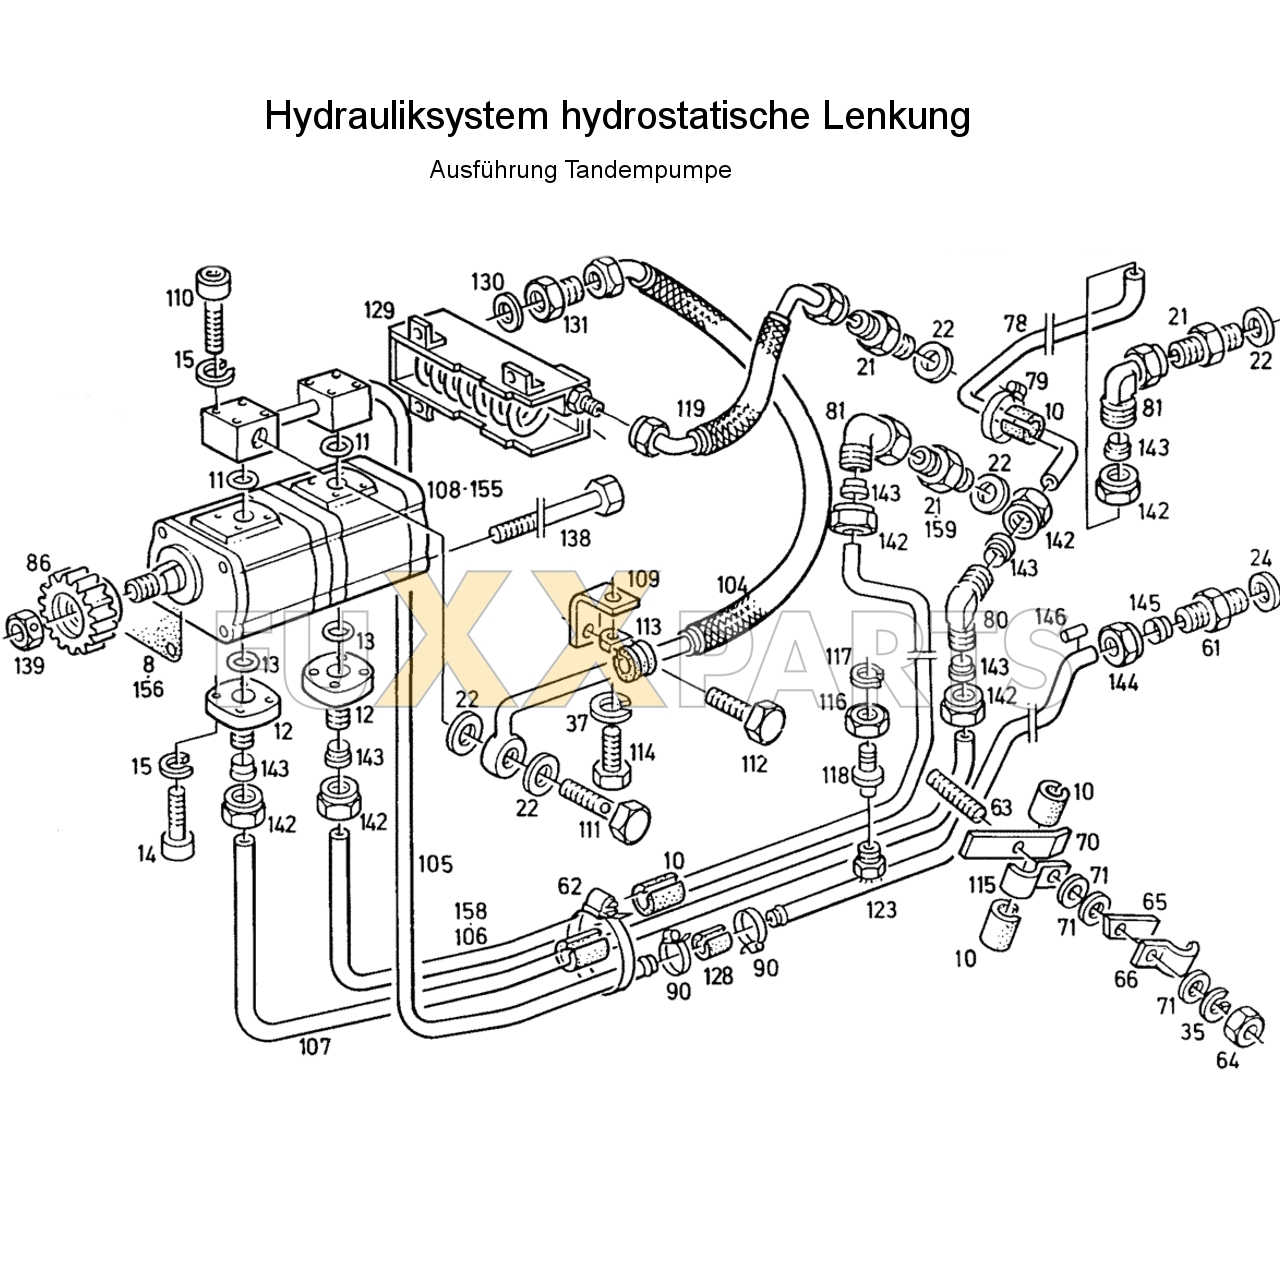 D 6807 Hydrauliksystem hyd. Lenkung Tandemp.